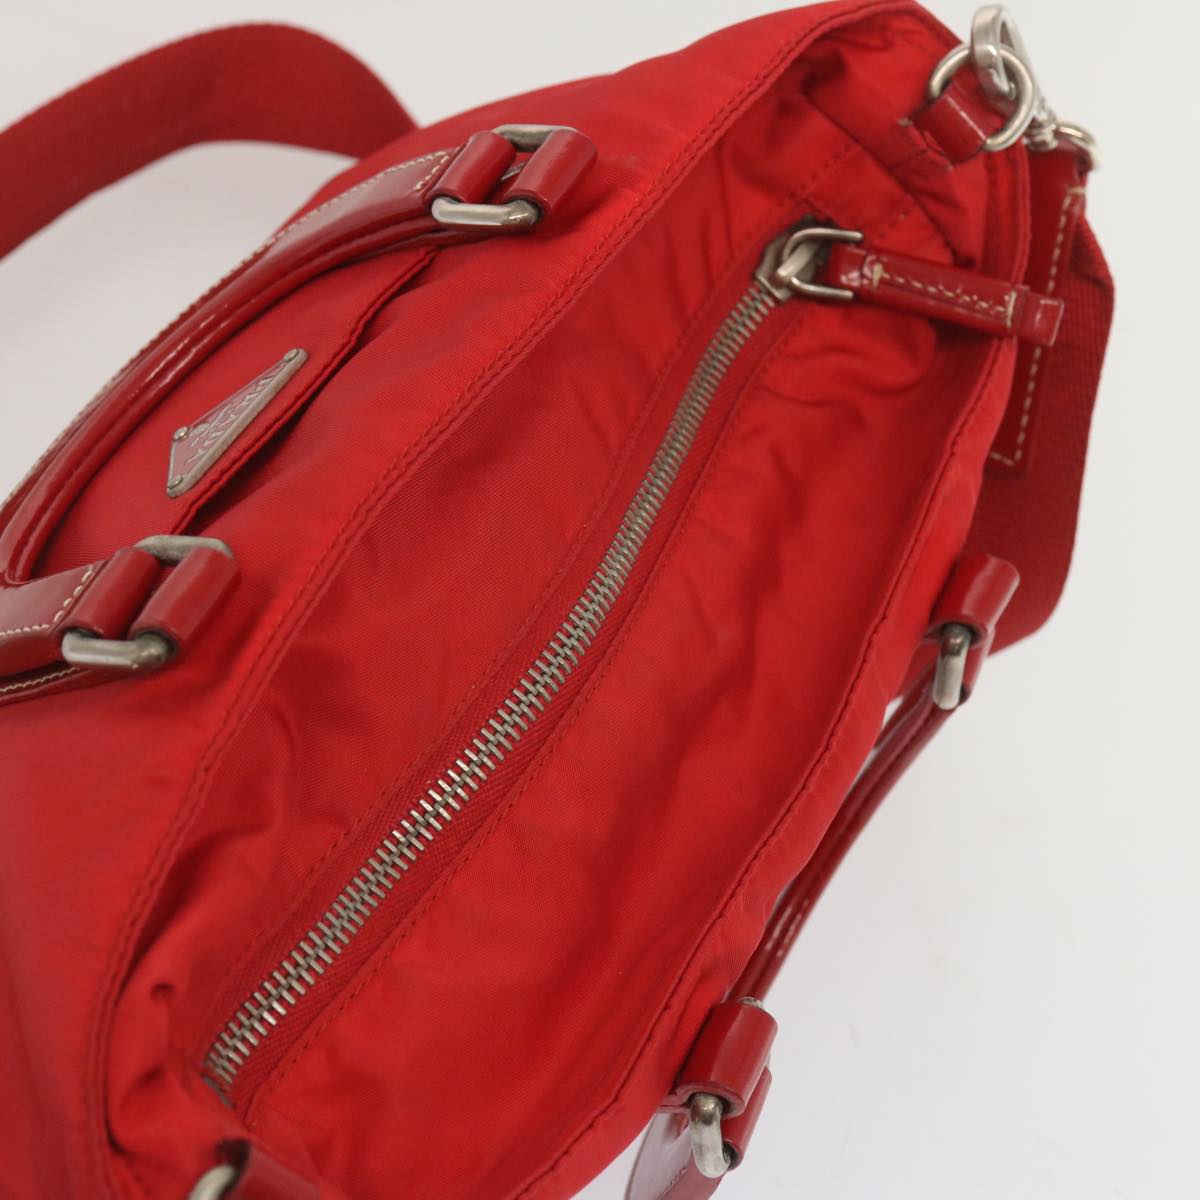 PRADA Hand Bag Nylon 2way Red Auth 67986